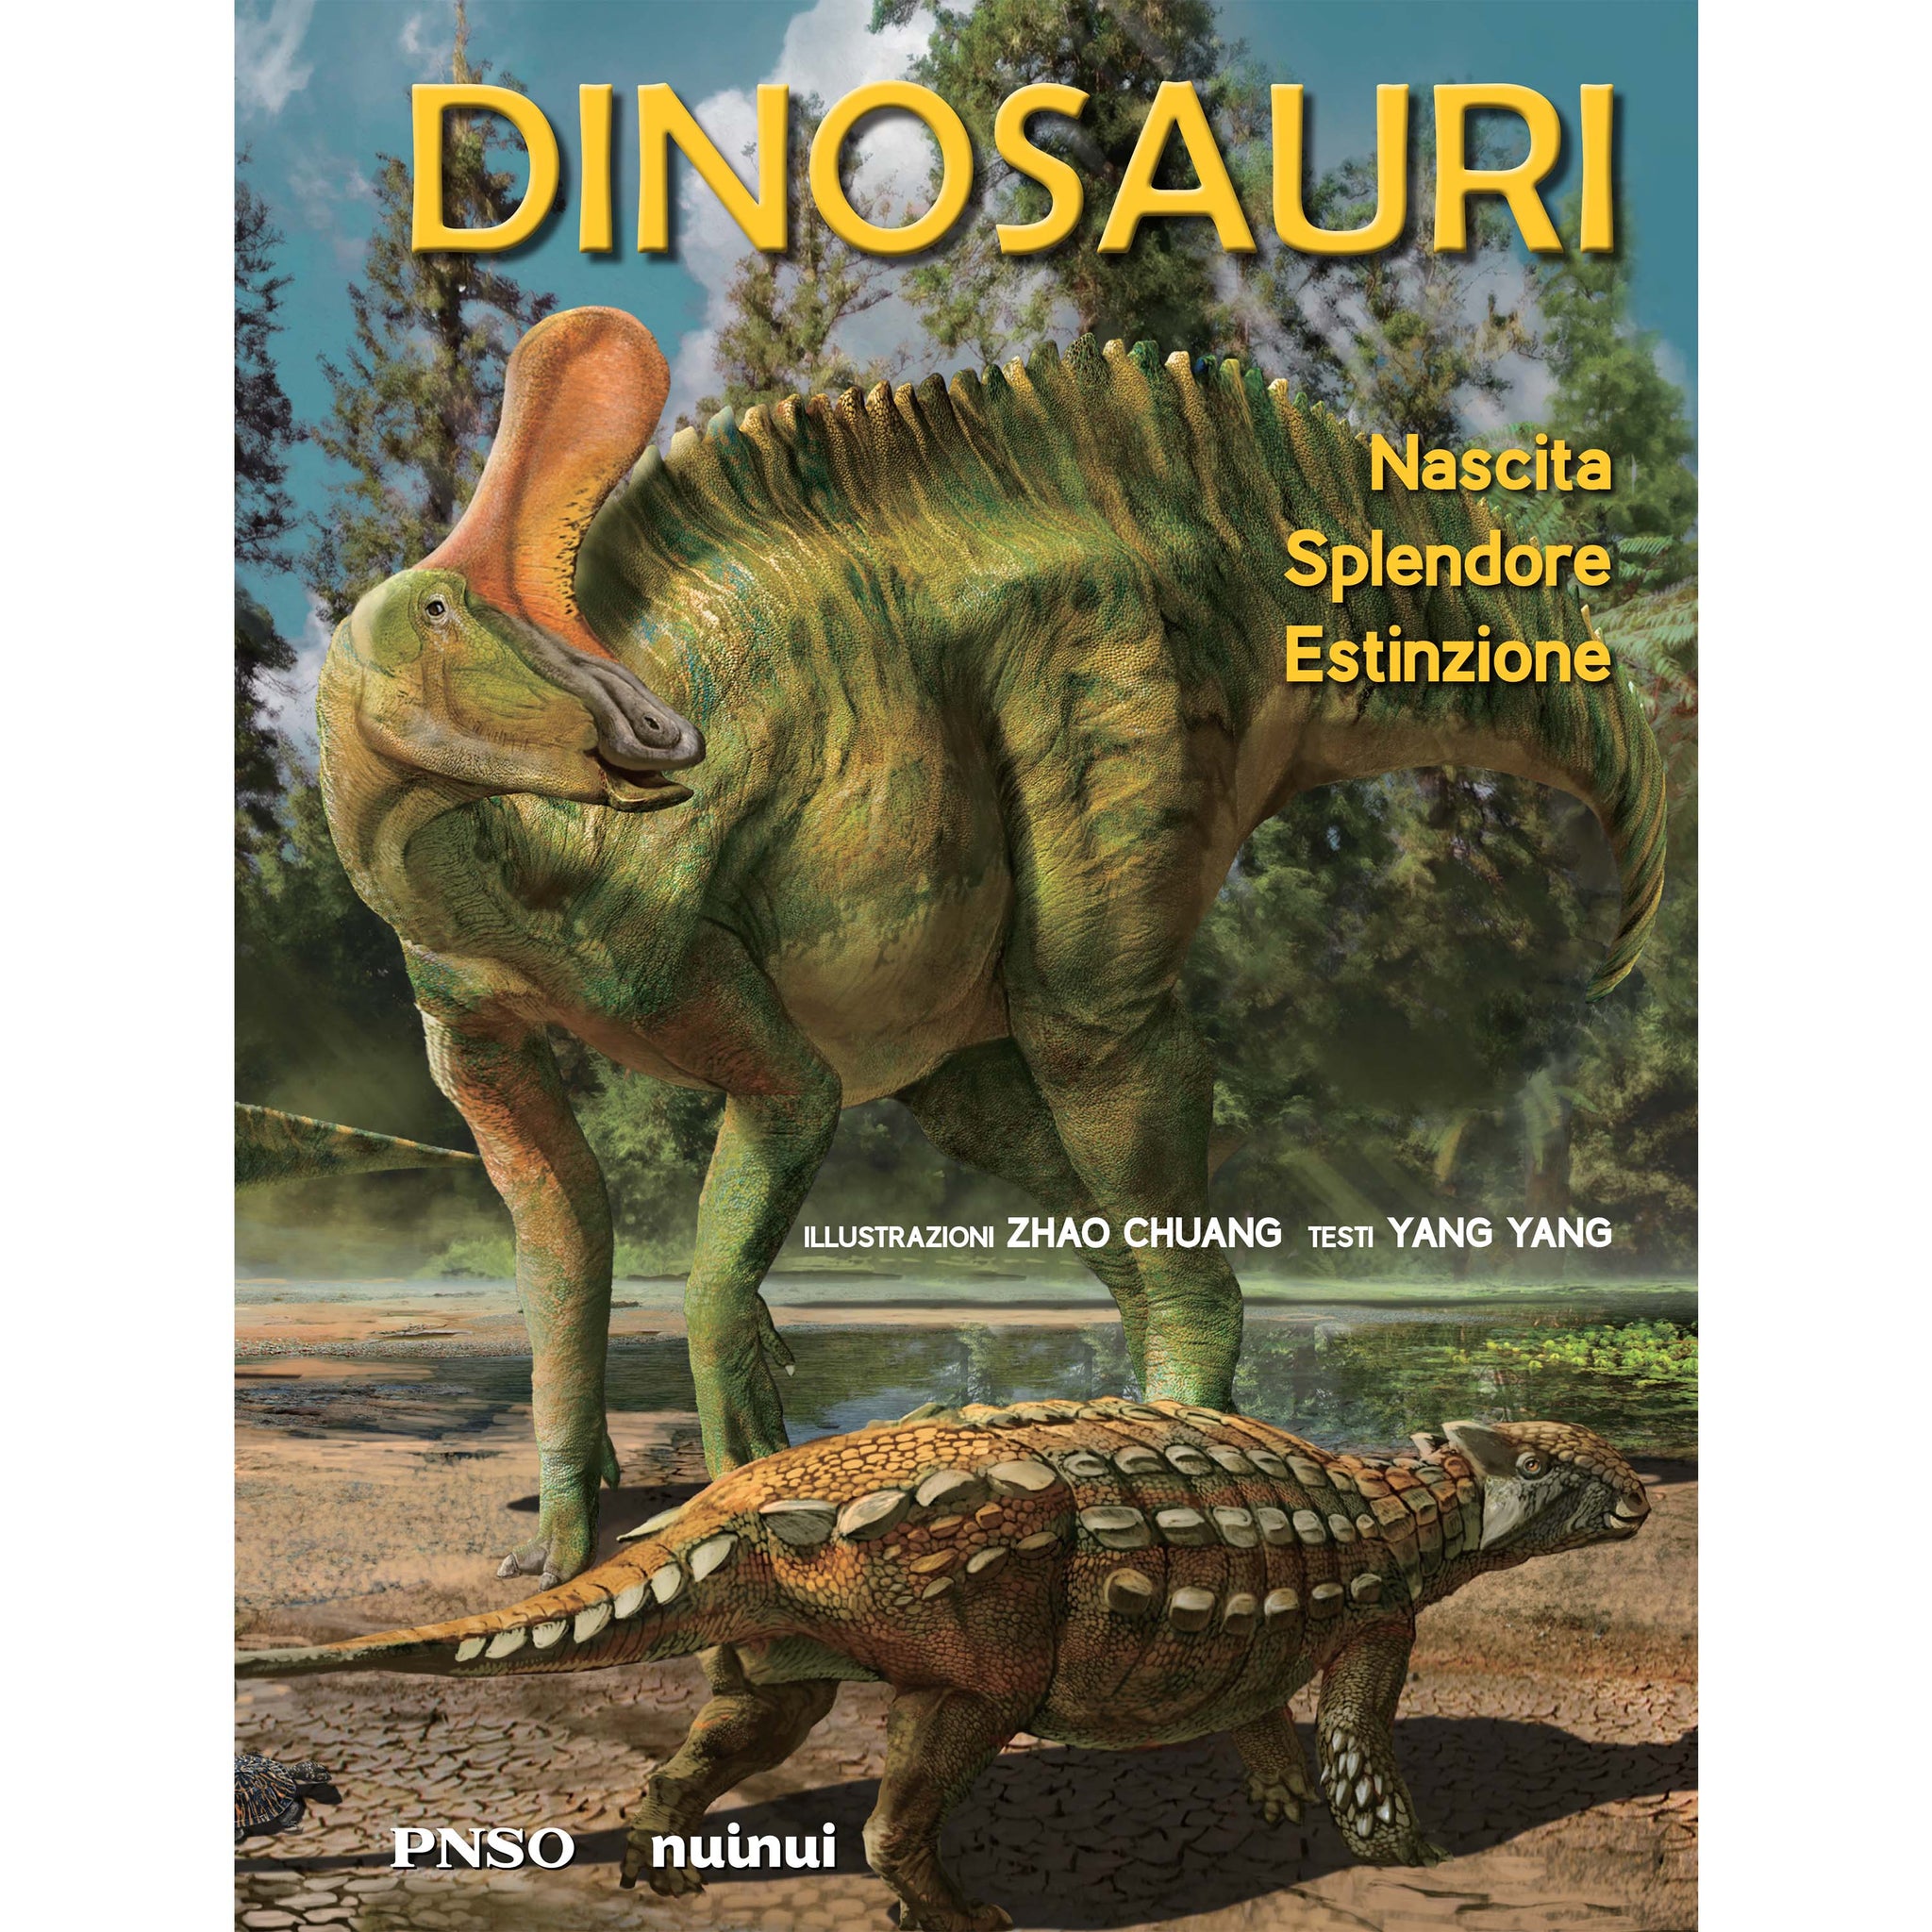 Dinosauri - Nascita, splendore, estinzione